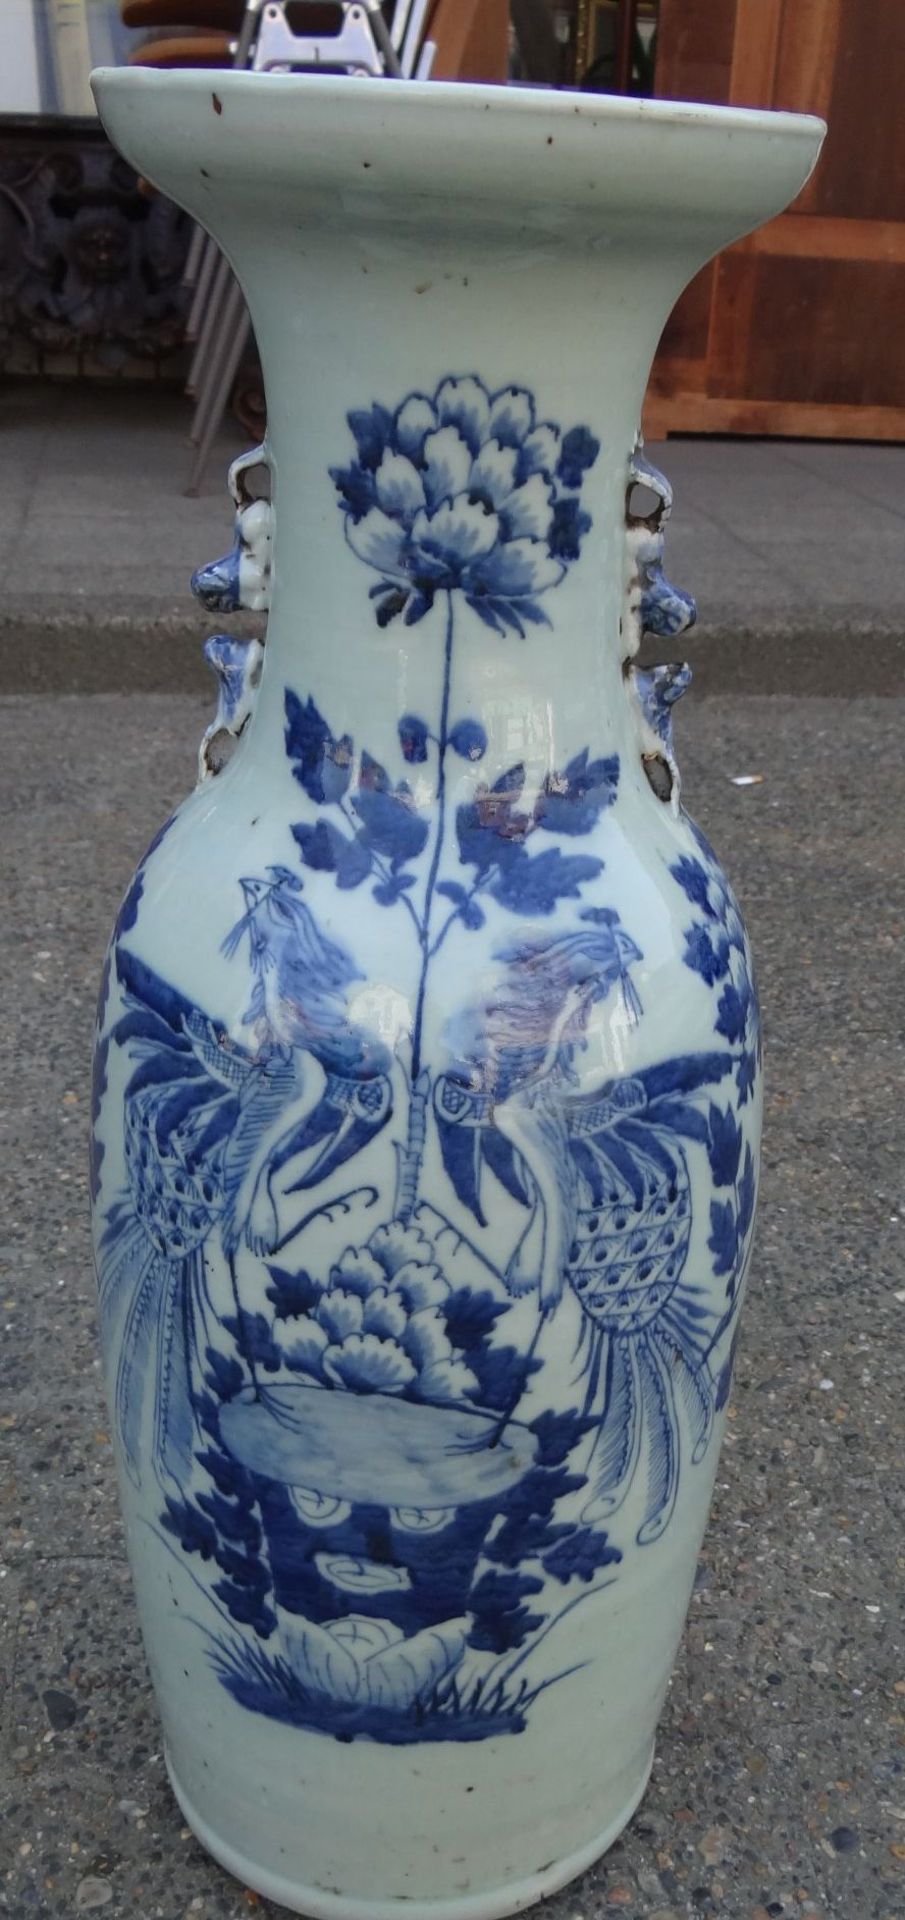 *hohe China-Vase mit Blaumalerei, älter, mehtrfach geklebt, Altrisse, H-58 cm, D-18 c